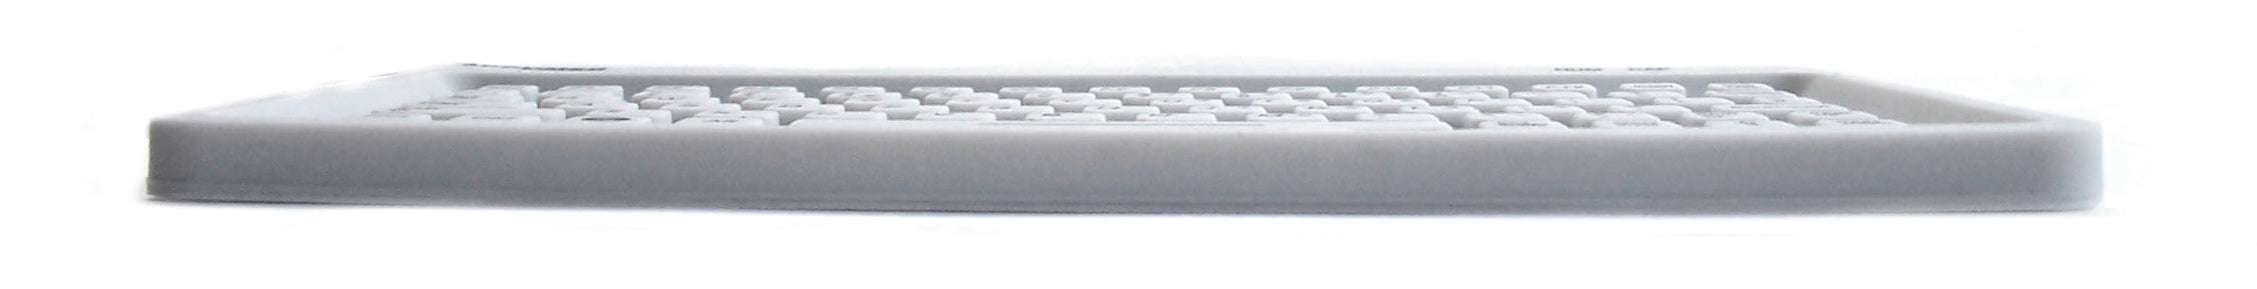 Accuratus AccuMed Mini - Mini clavier clinique/médical antibactérien étanche IP67 USB avec tapis de souris